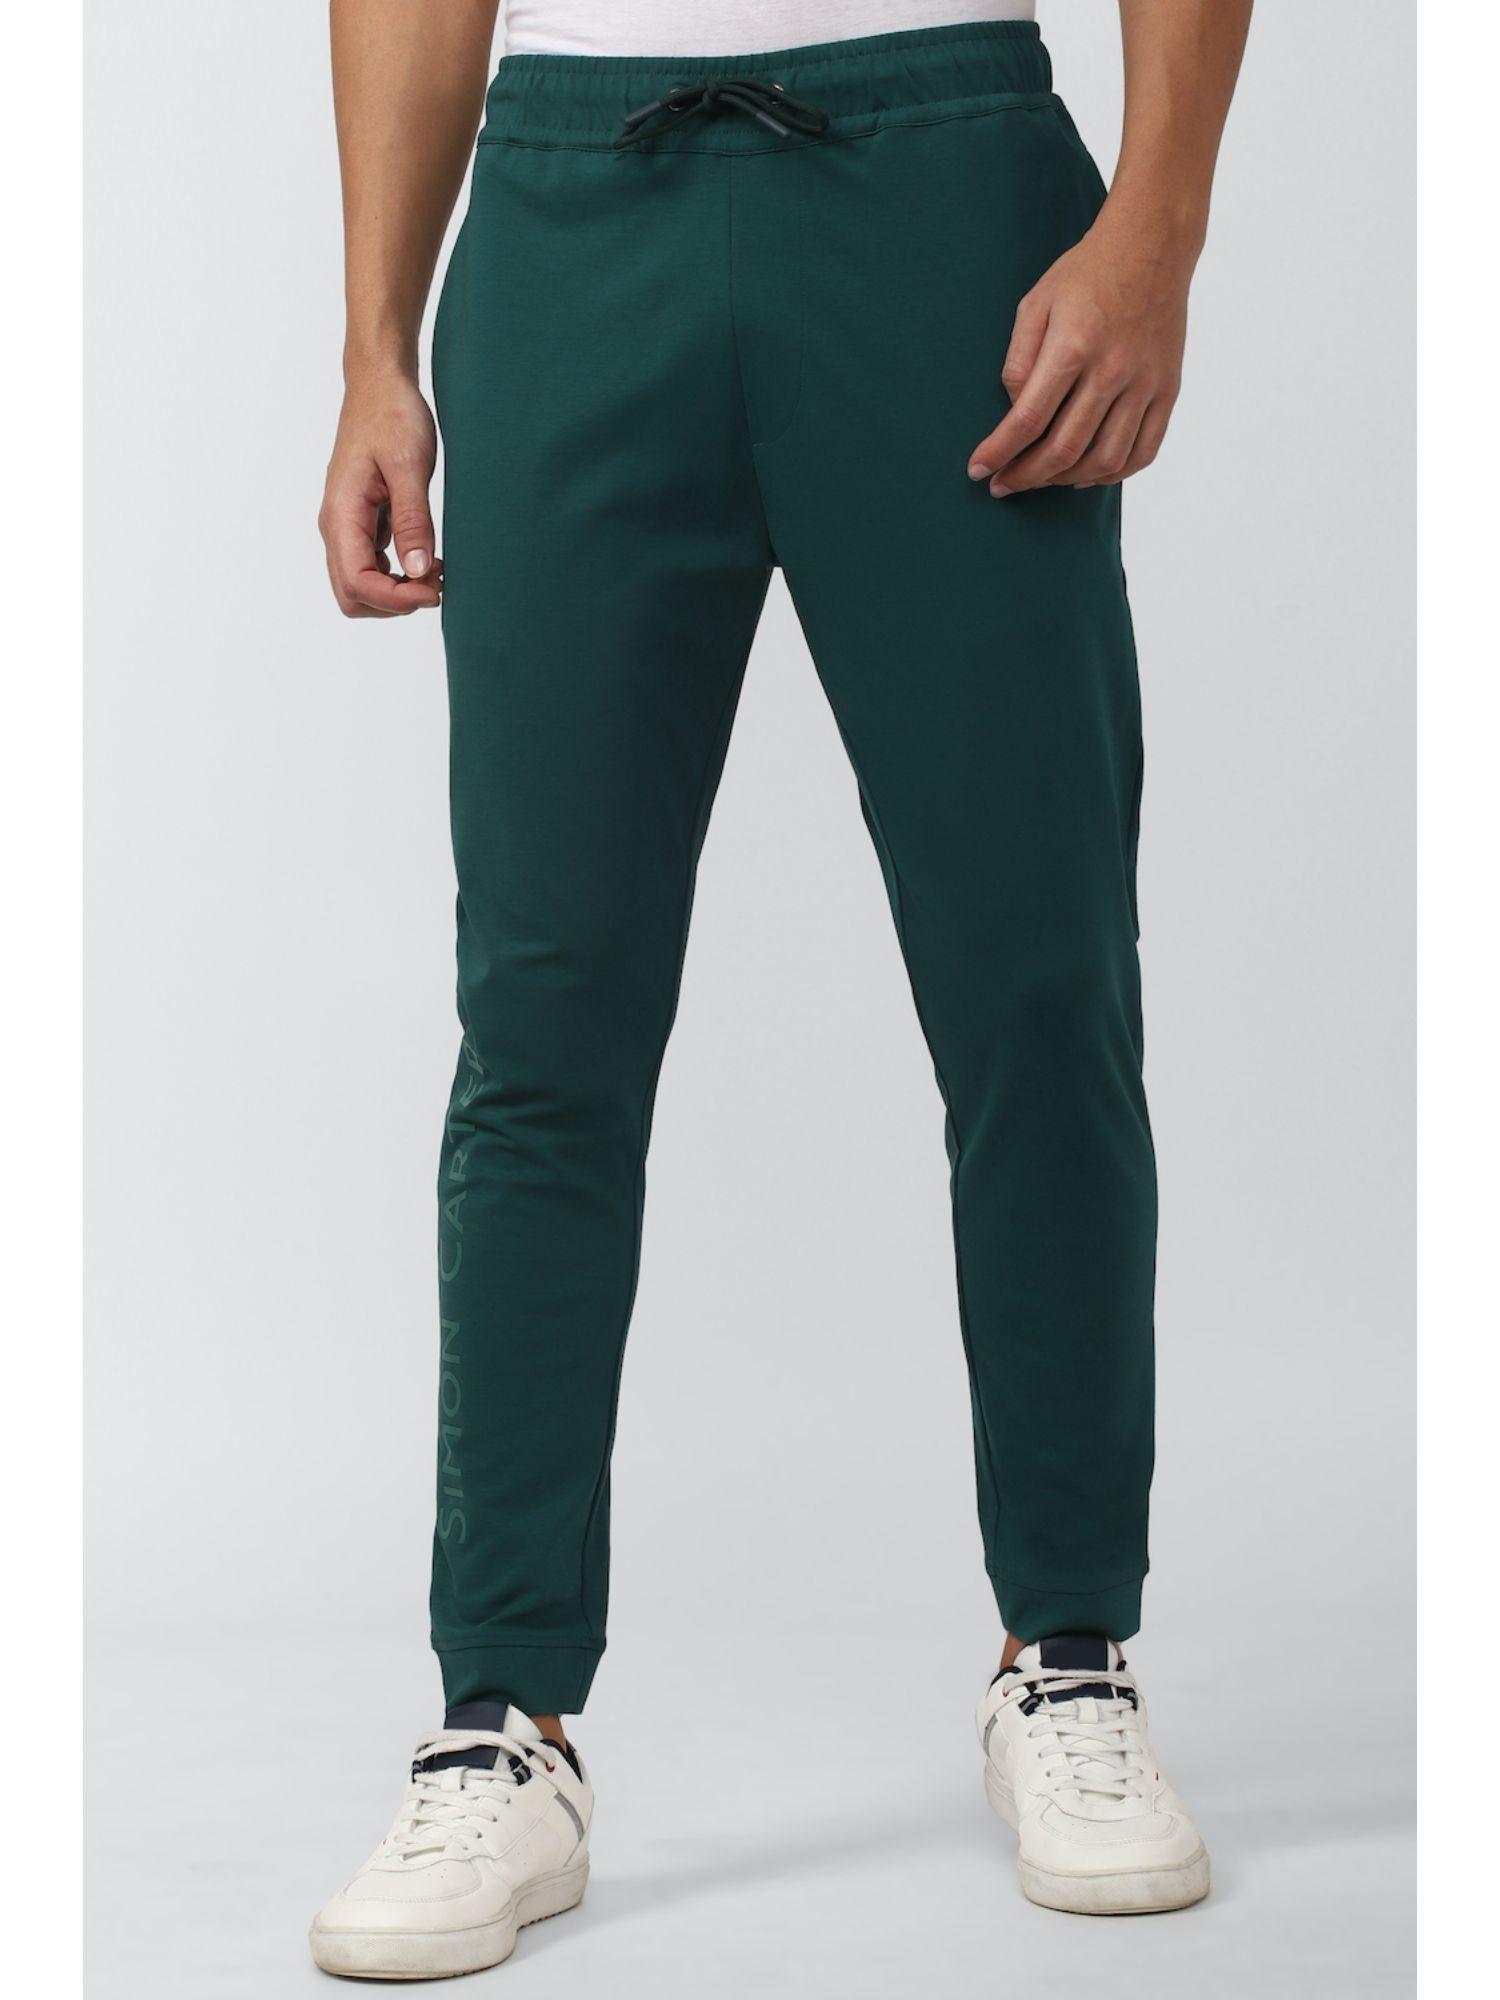 green jogger pants drawstring